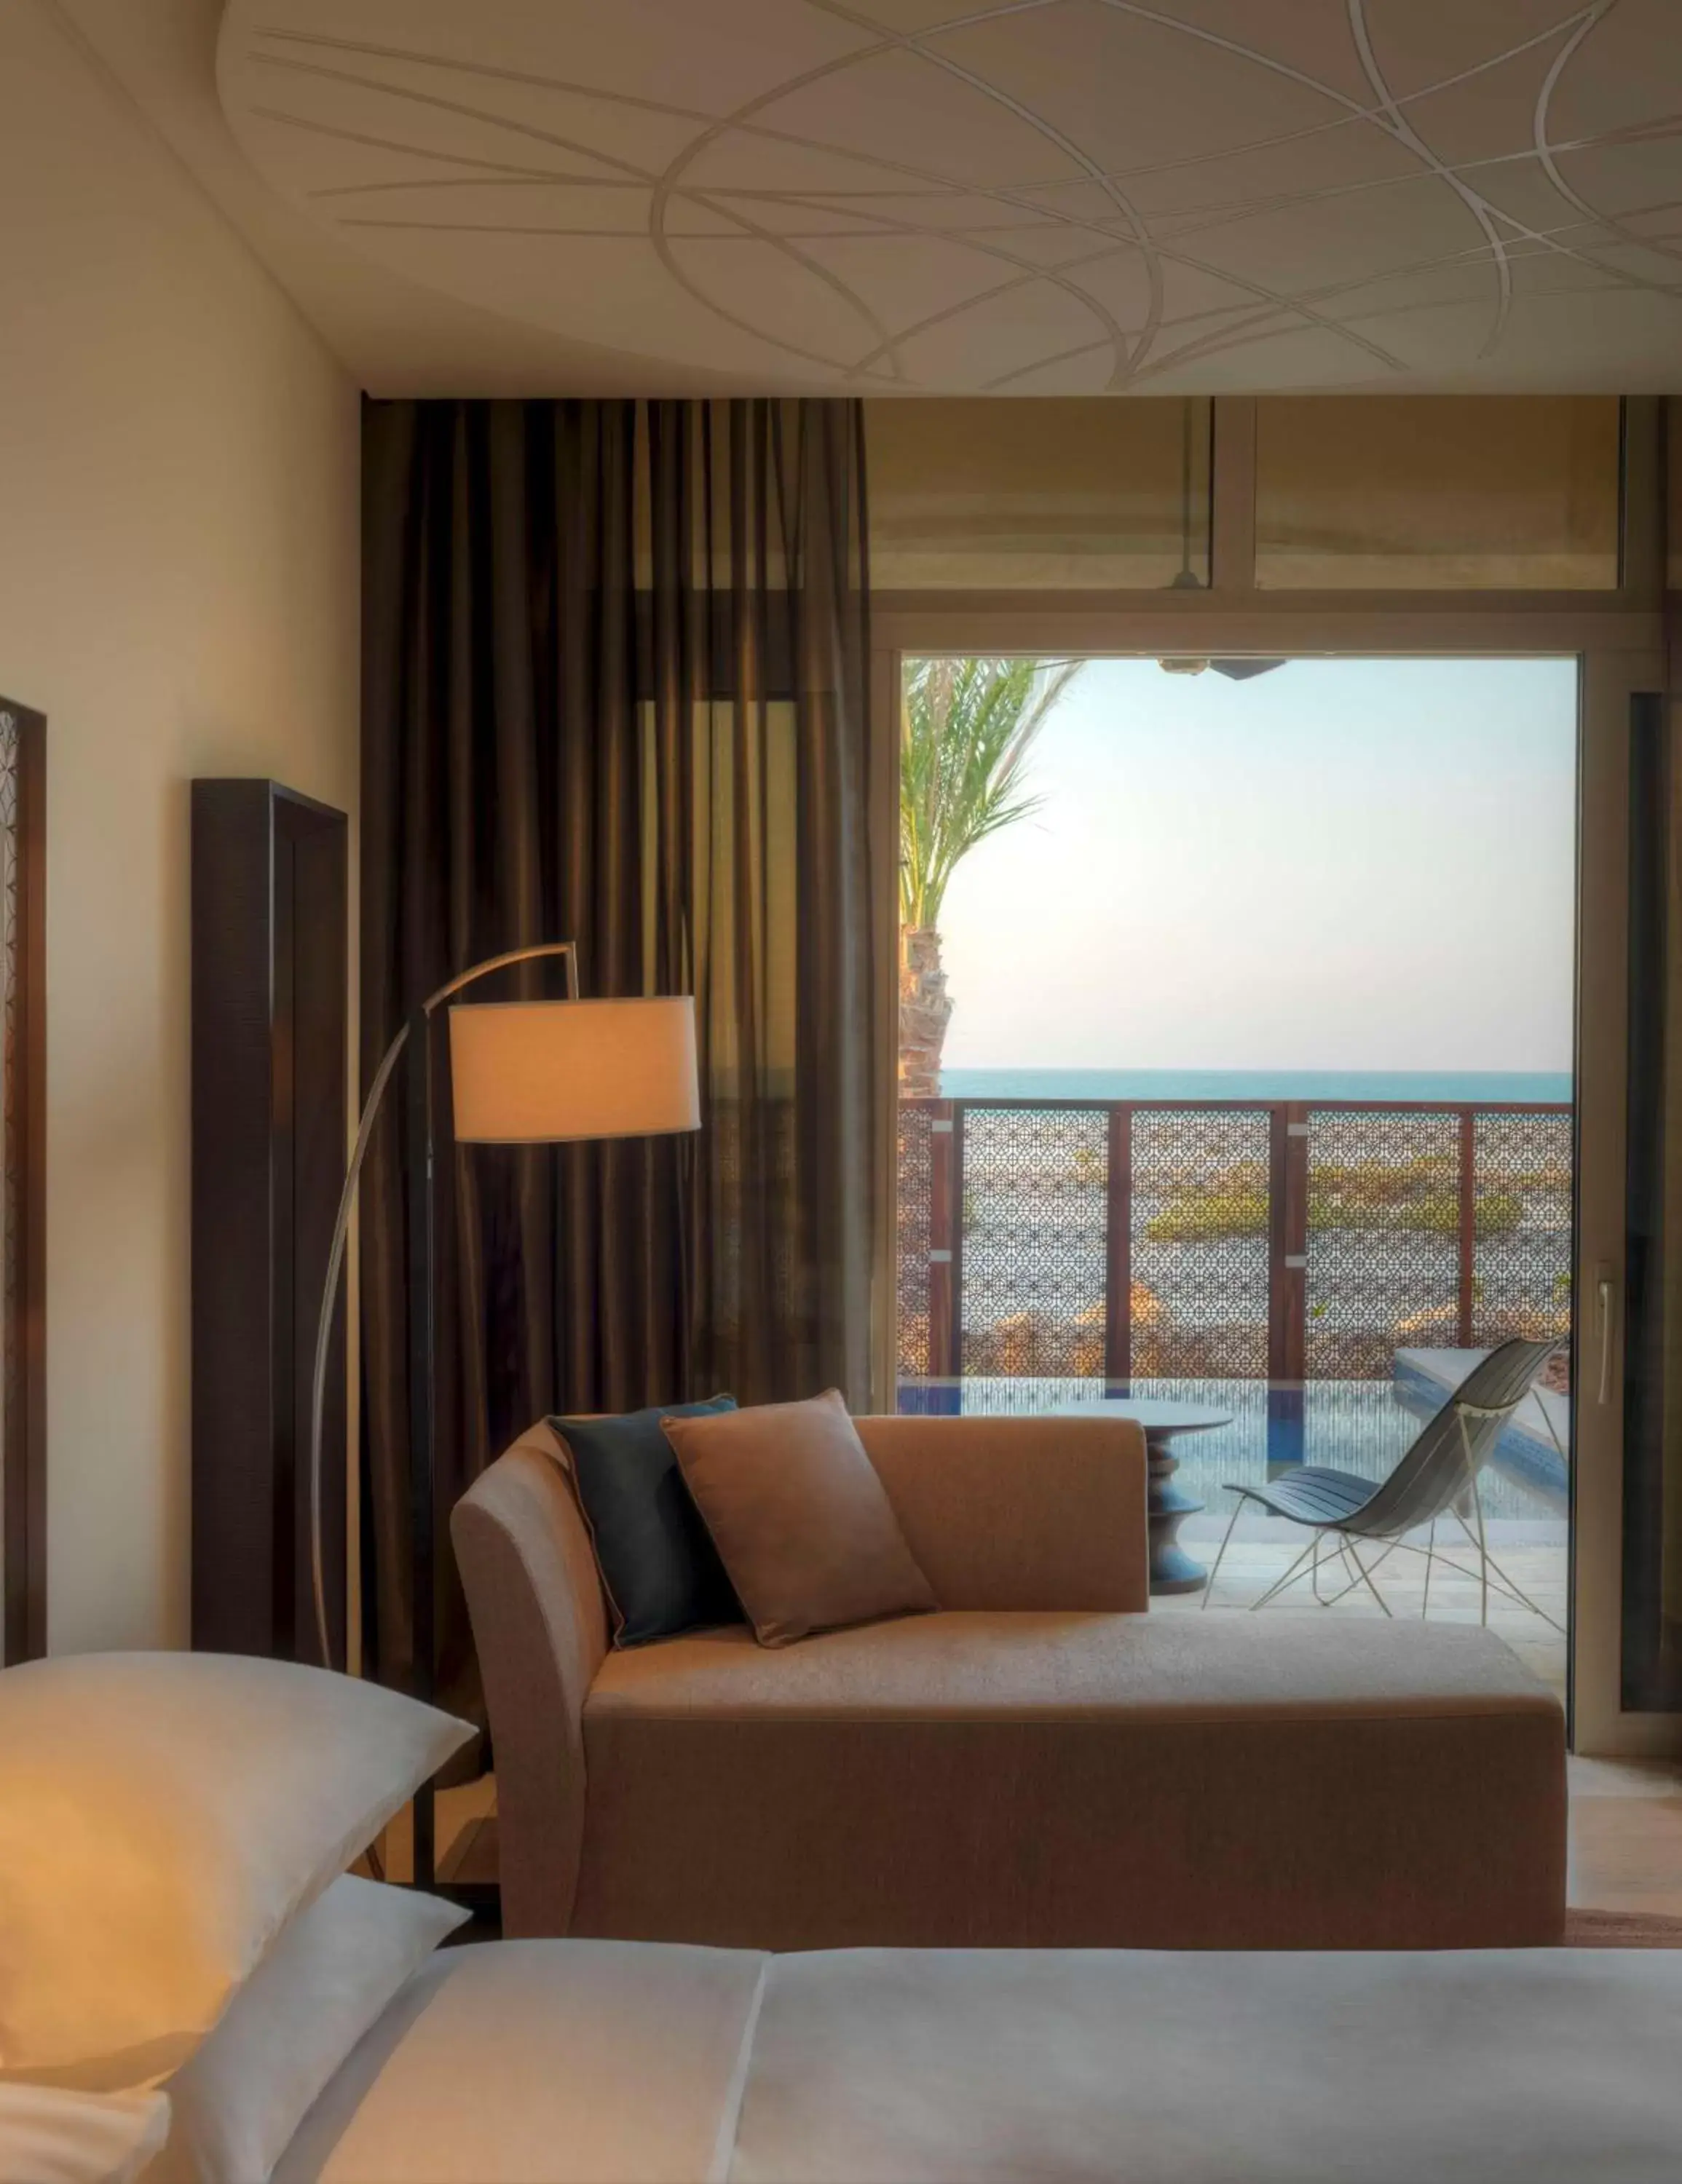 Bedroom, Seating Area in Park Hyatt Abu Dhabi Hotel and Villas